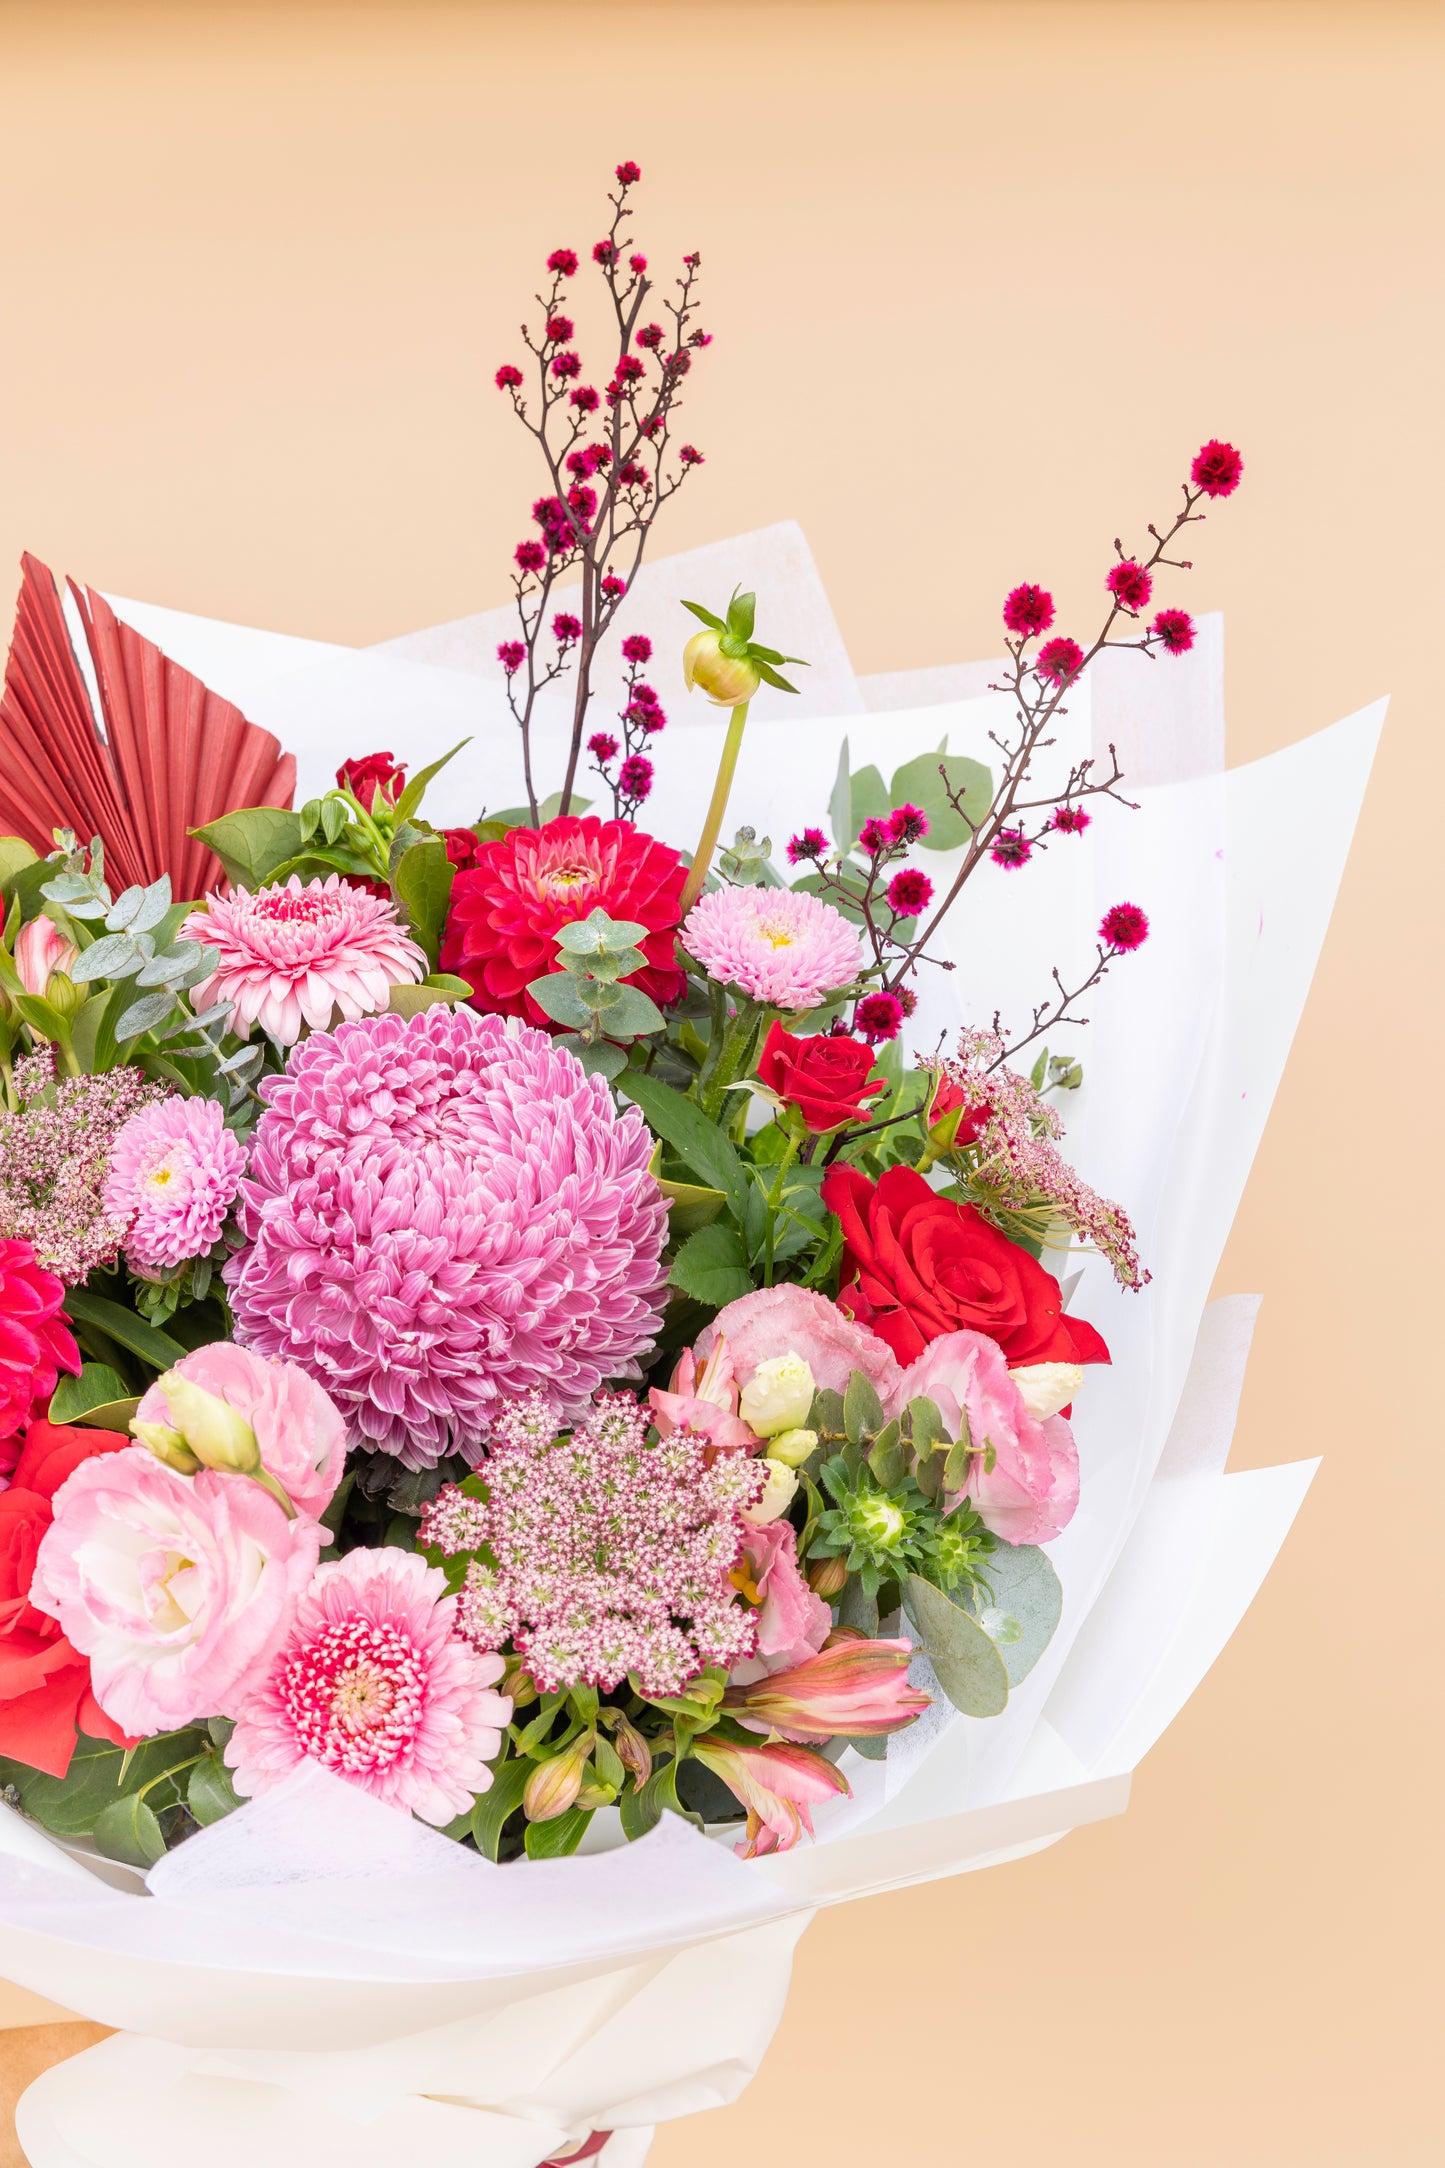 Aphrodite Bouquet - Premium Red & Pink